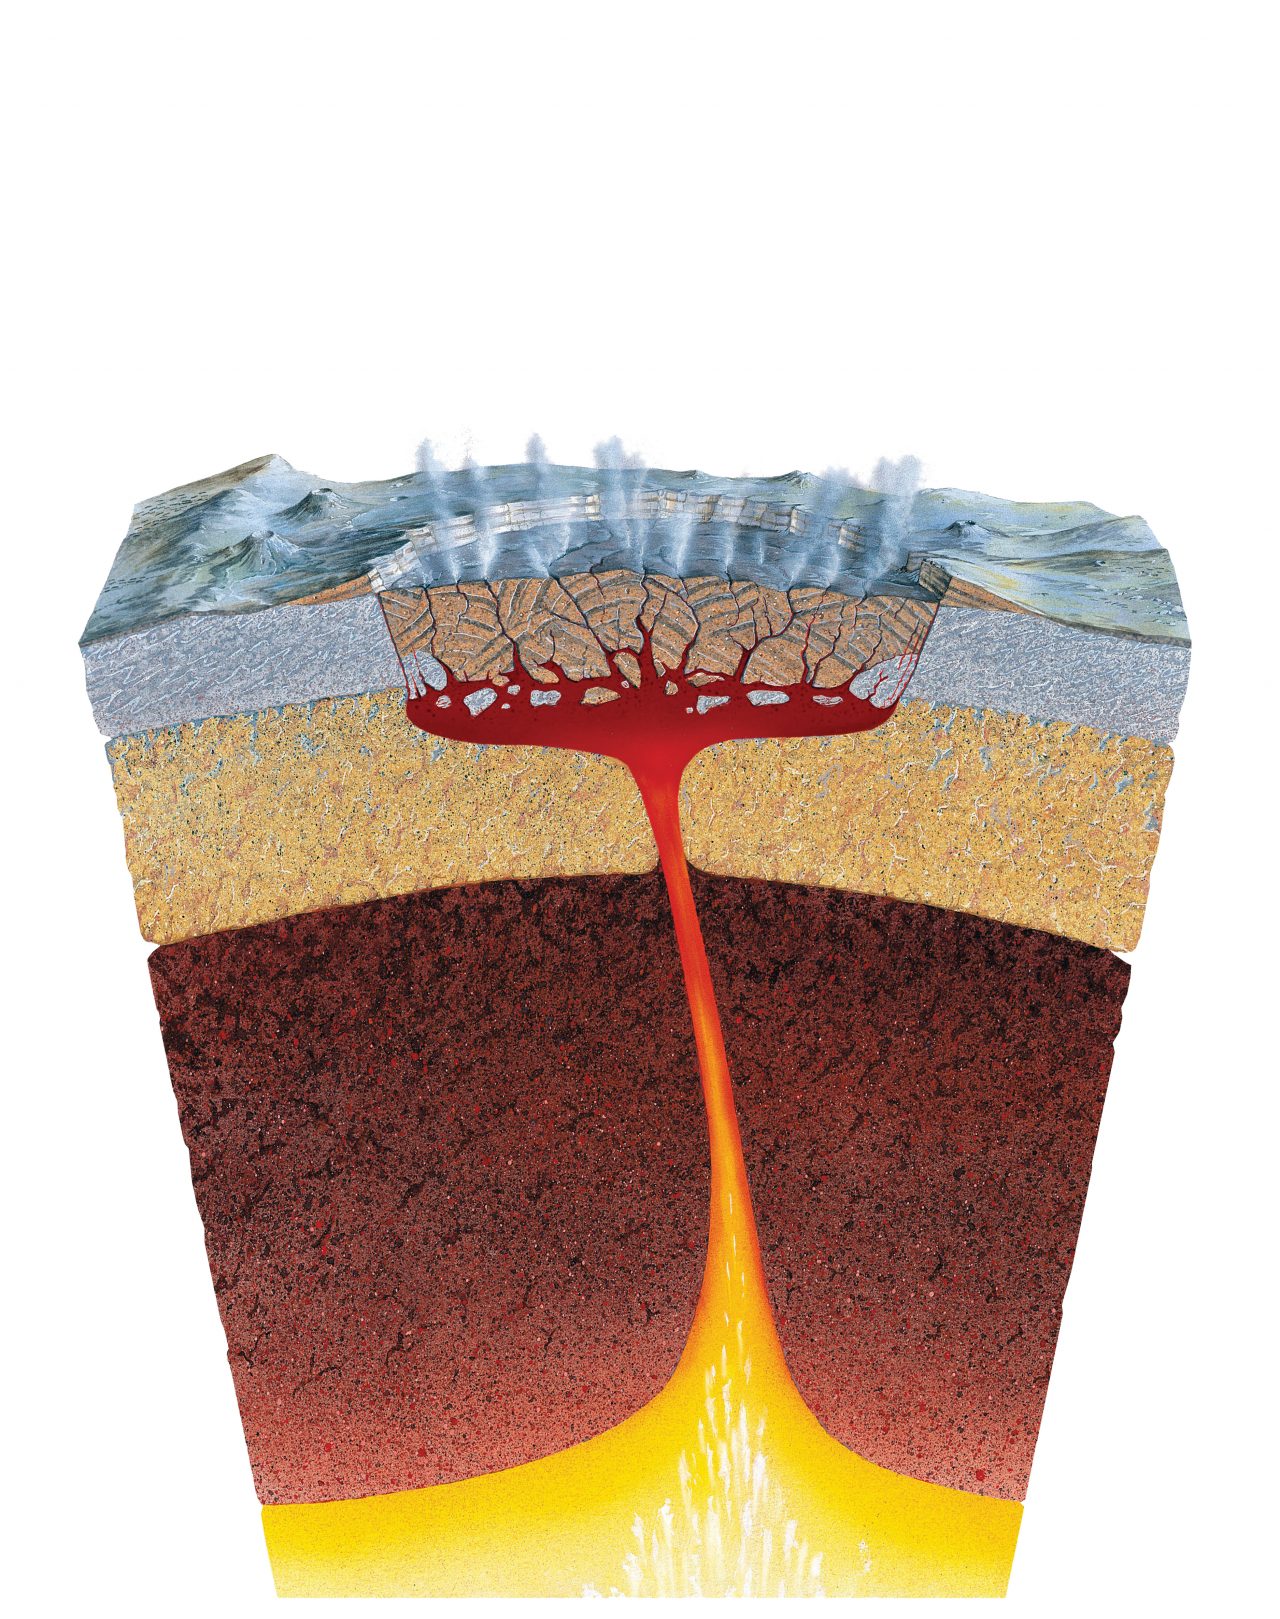 Vulkanutbrudd illustrert